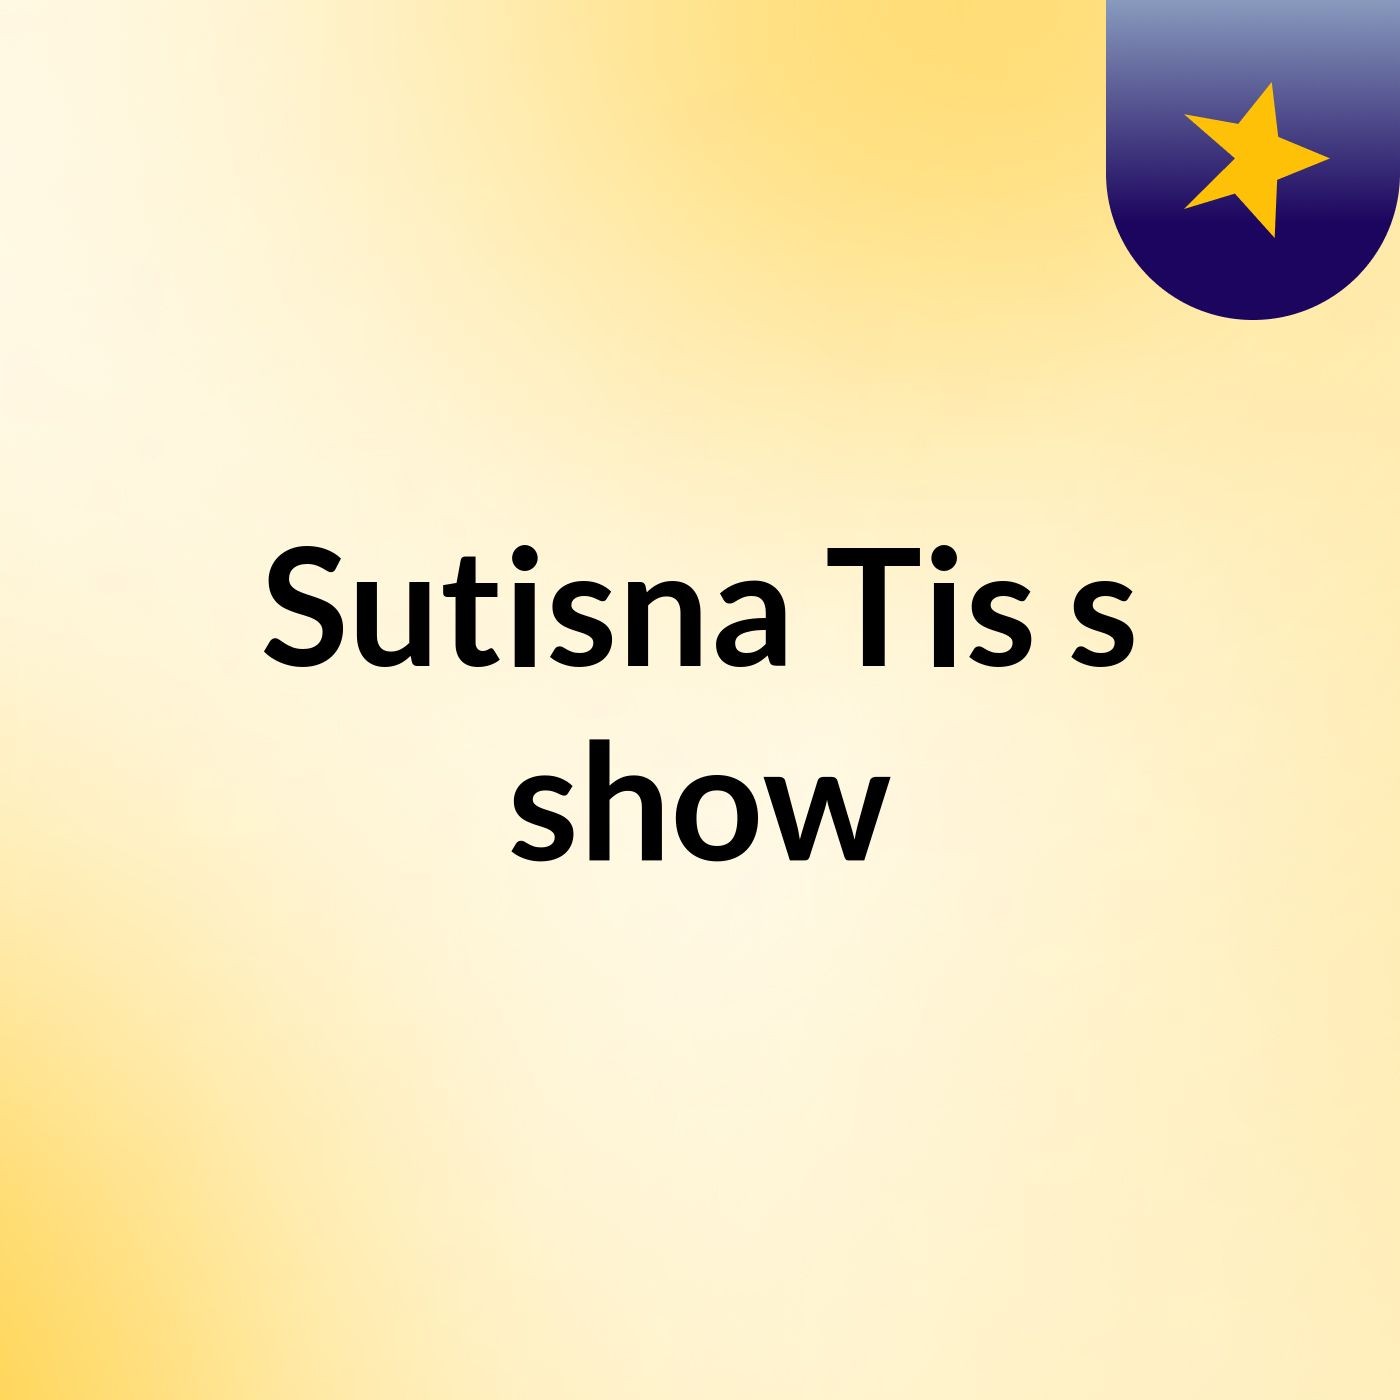 Sutisna Tis's show